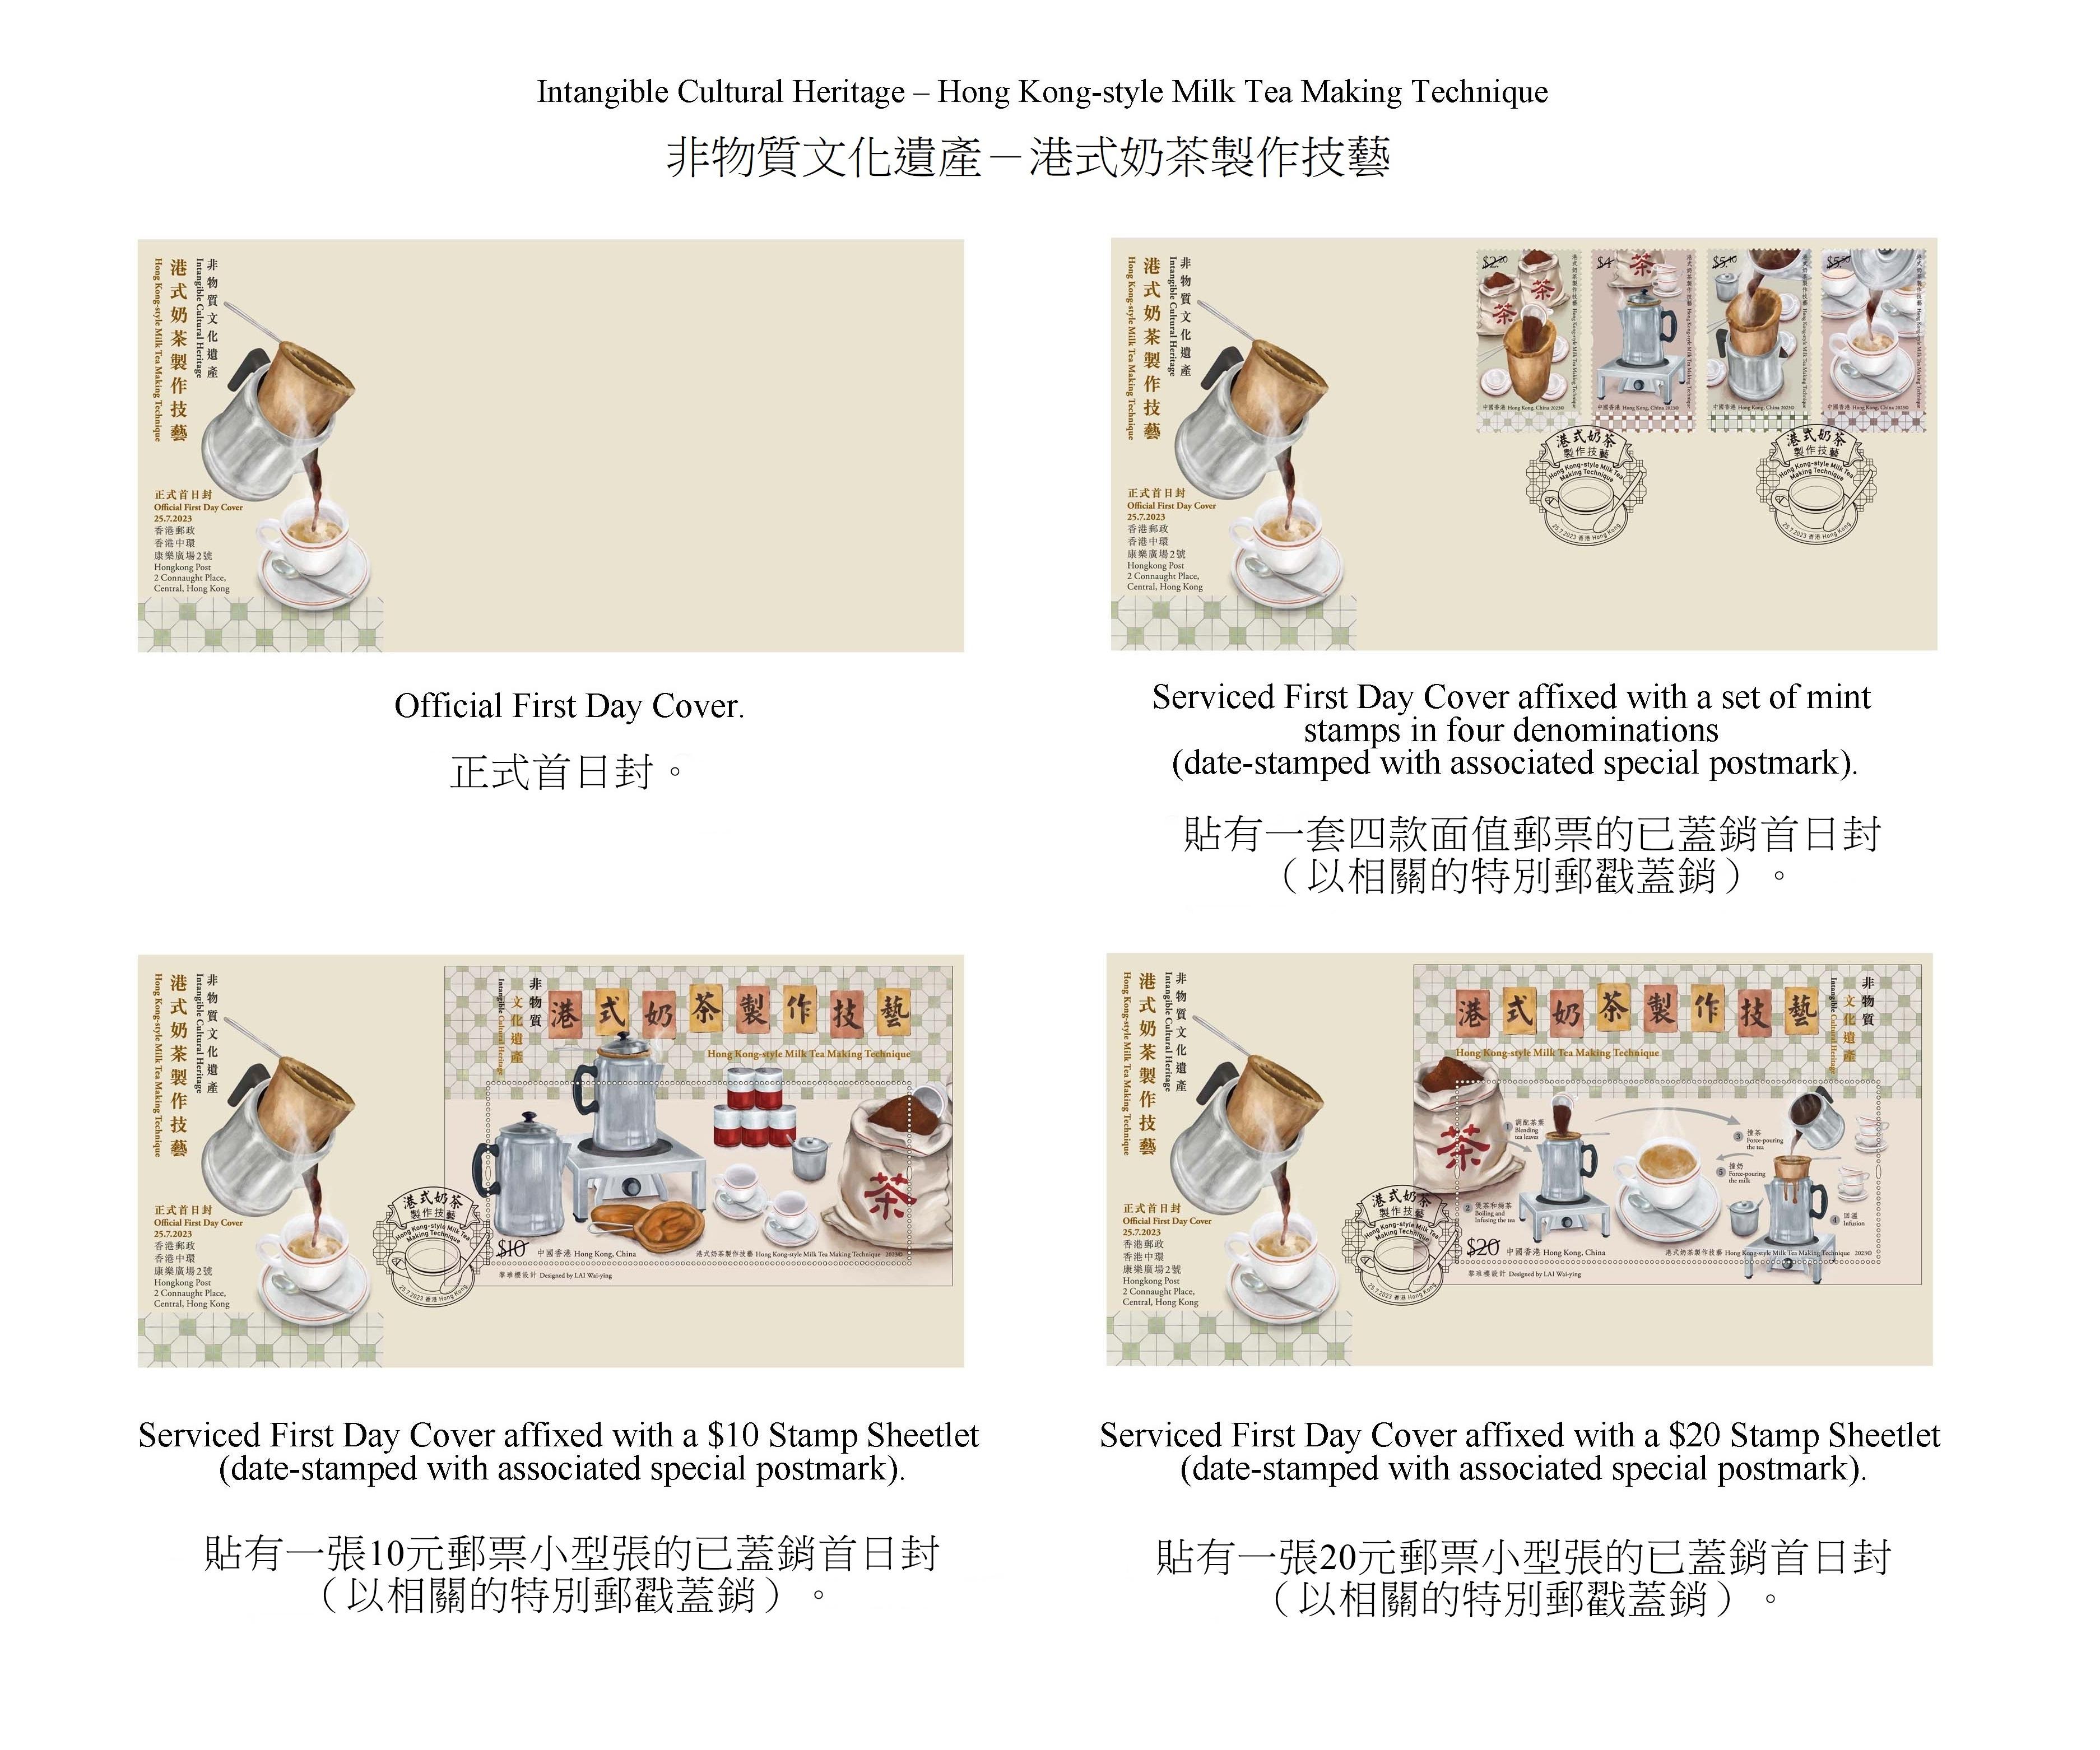 香港邮政七月二十五日（星期二）发行以「非物质文化遗产——港式奶茶制作技艺」为题的特别邮票及相关集邮品。图示首日封。